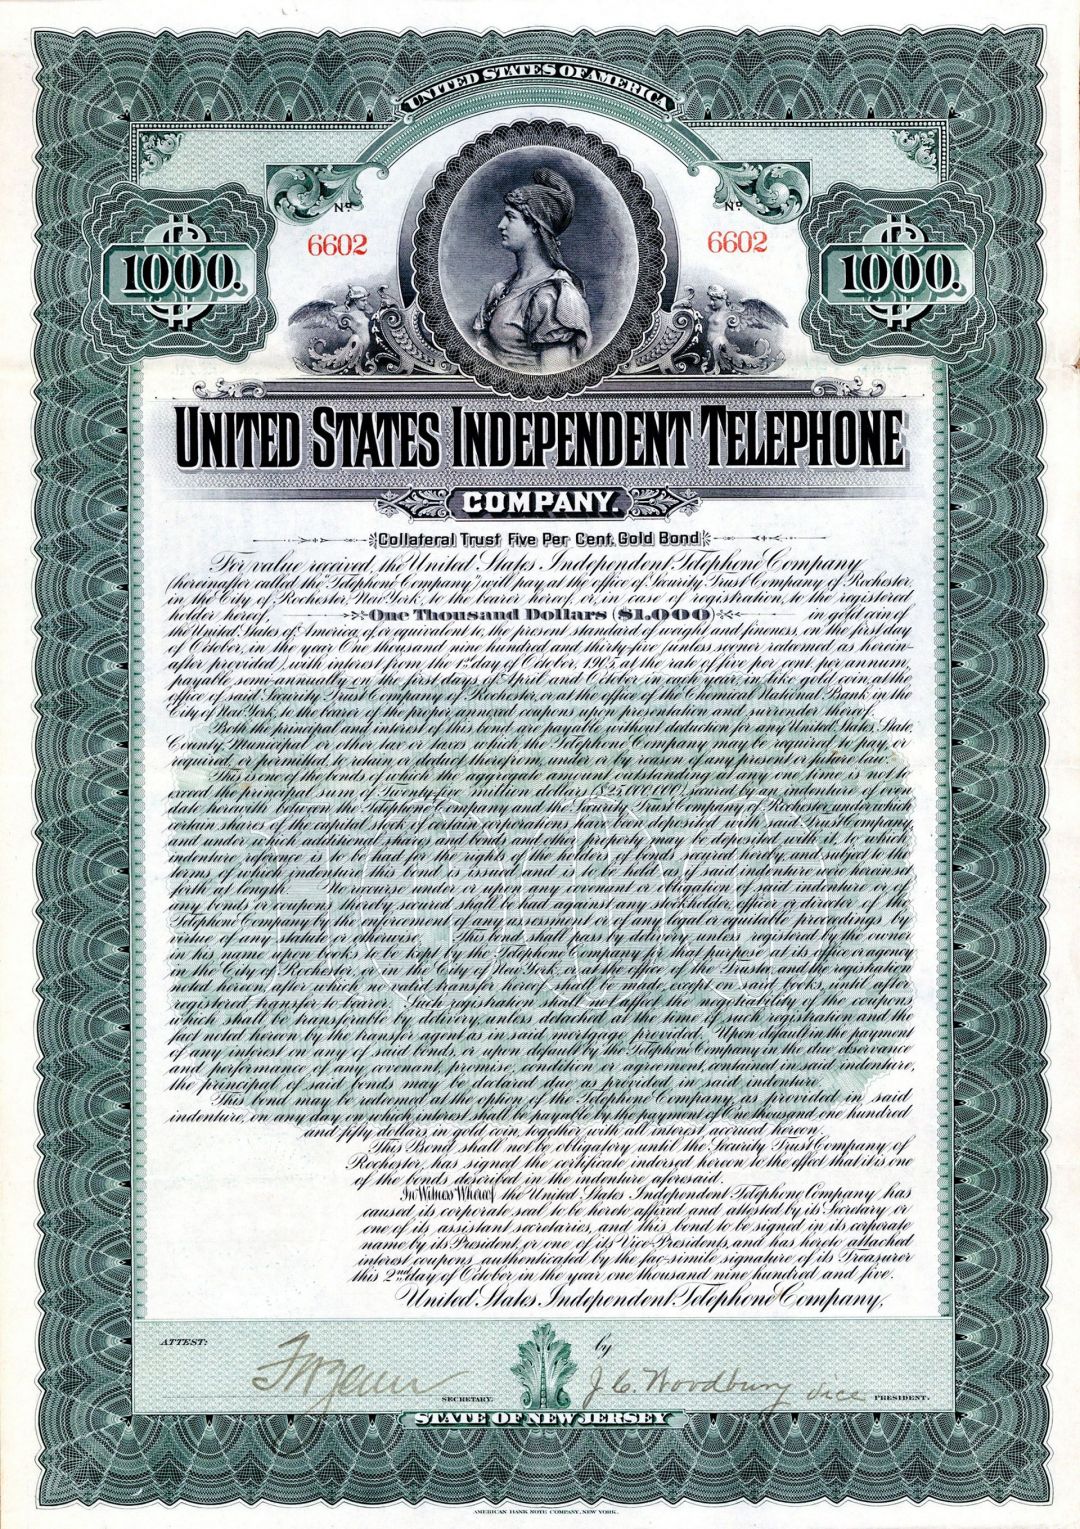 United States Independent Telephone Co. (Uncanceled) - $1,000 Bond